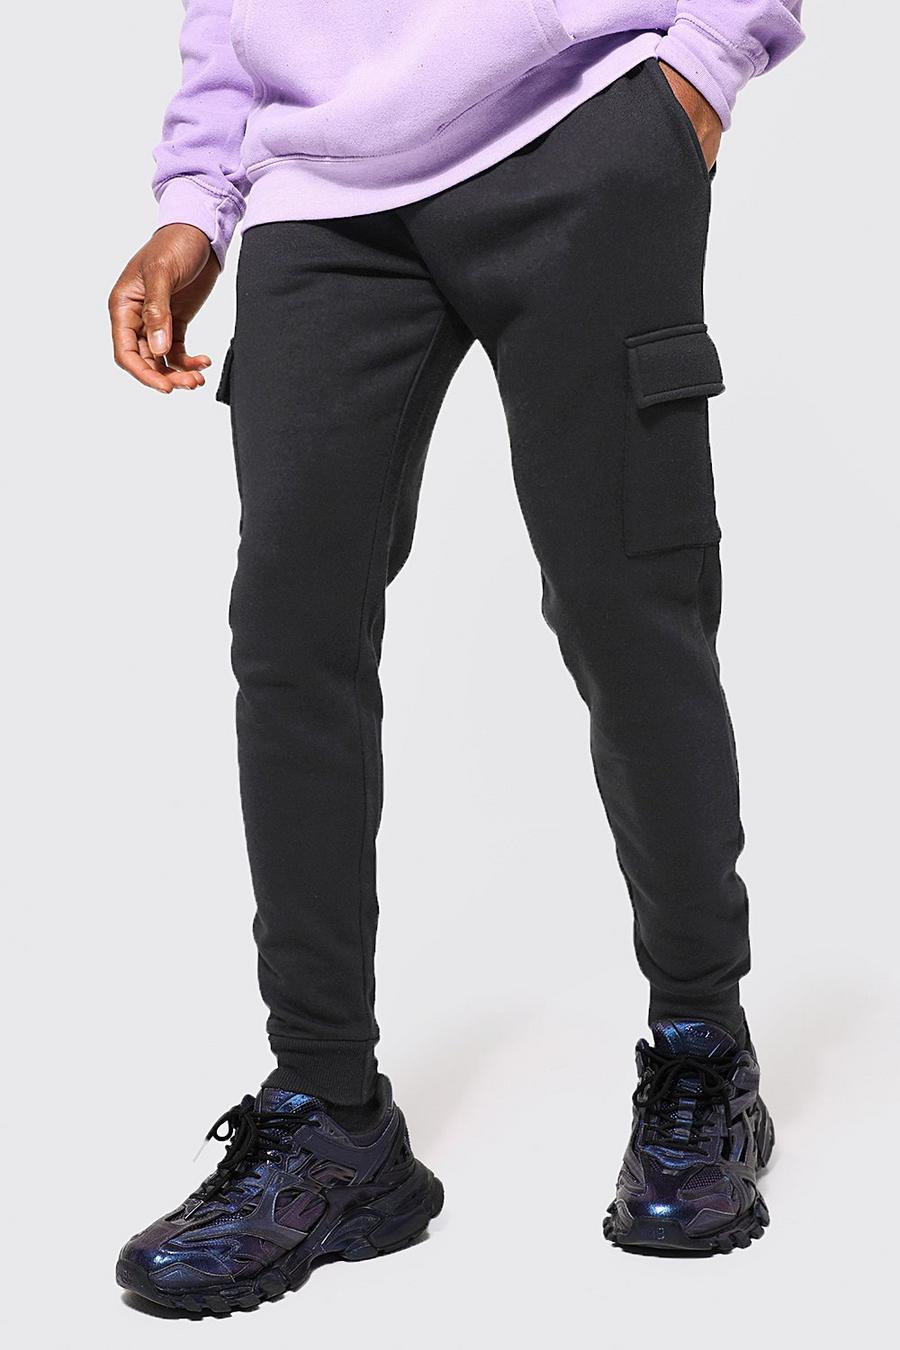 Pantalón deportivo cargo pitillo con algodón ecológico, Black nero